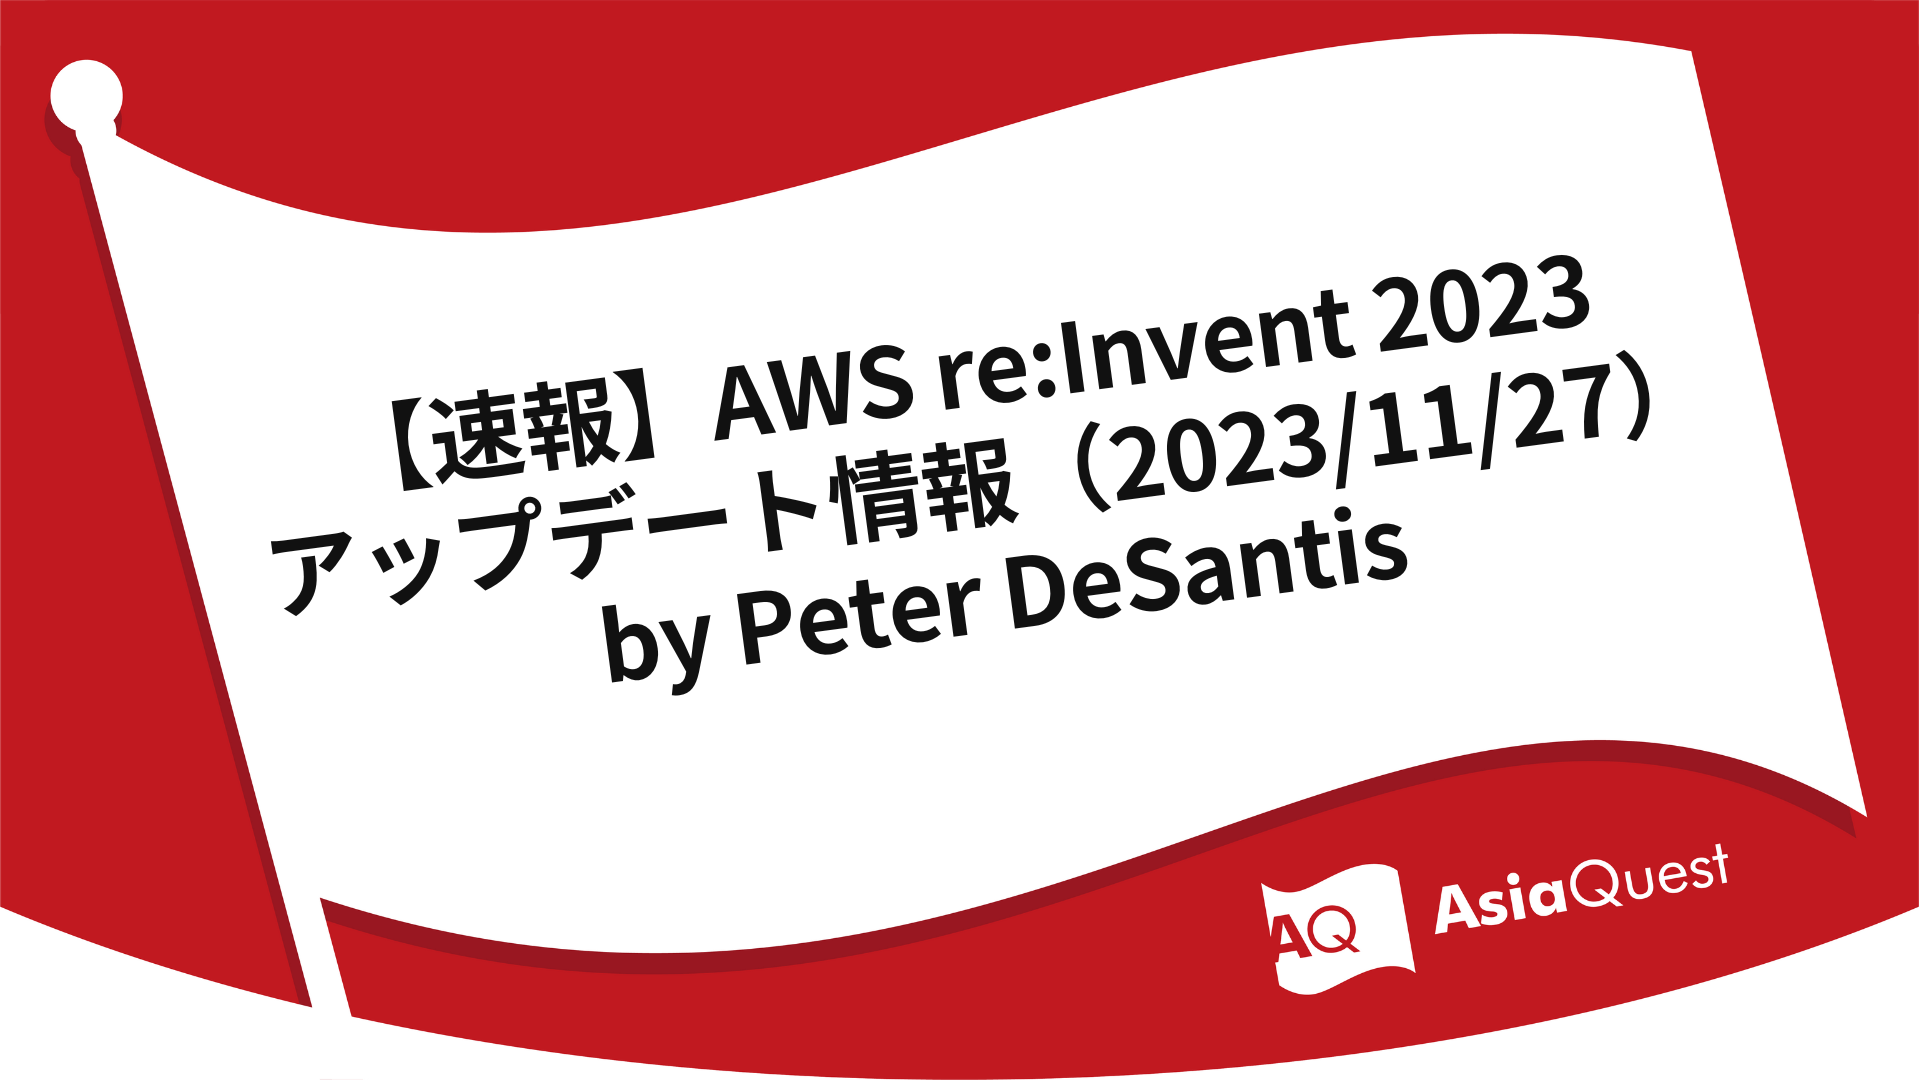 【速報】AWS re:Invent 2023 アップデート情報（2023/11/27）by Peter DeSantis